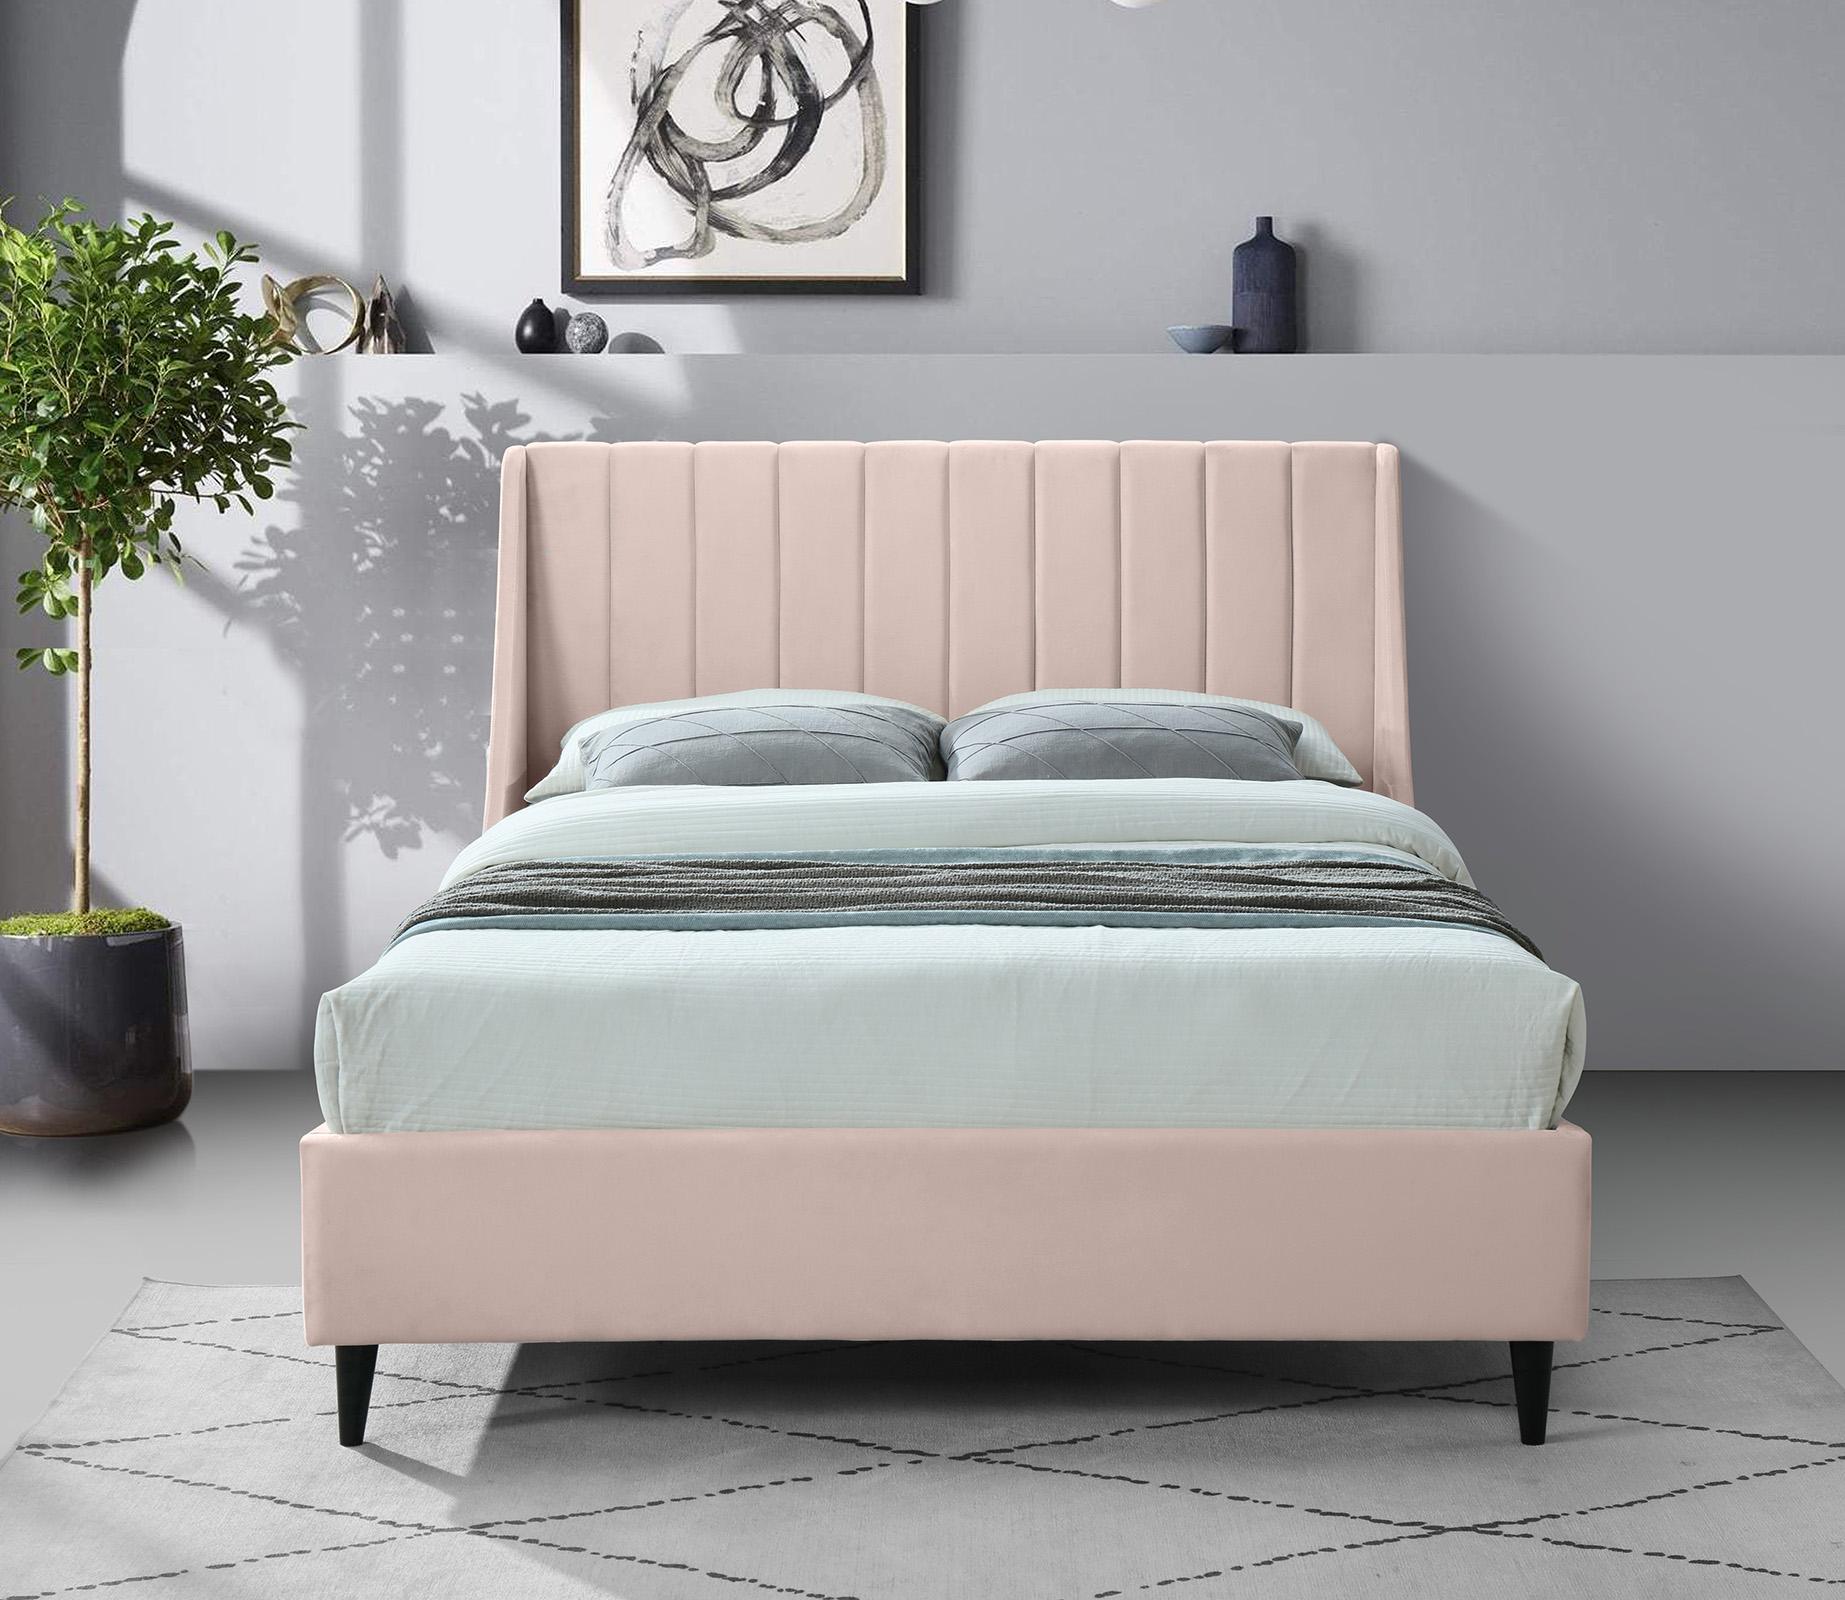 

    
Meridian Furniture EVA EvaPink-K Platform Bed Pink EvaPink-K
